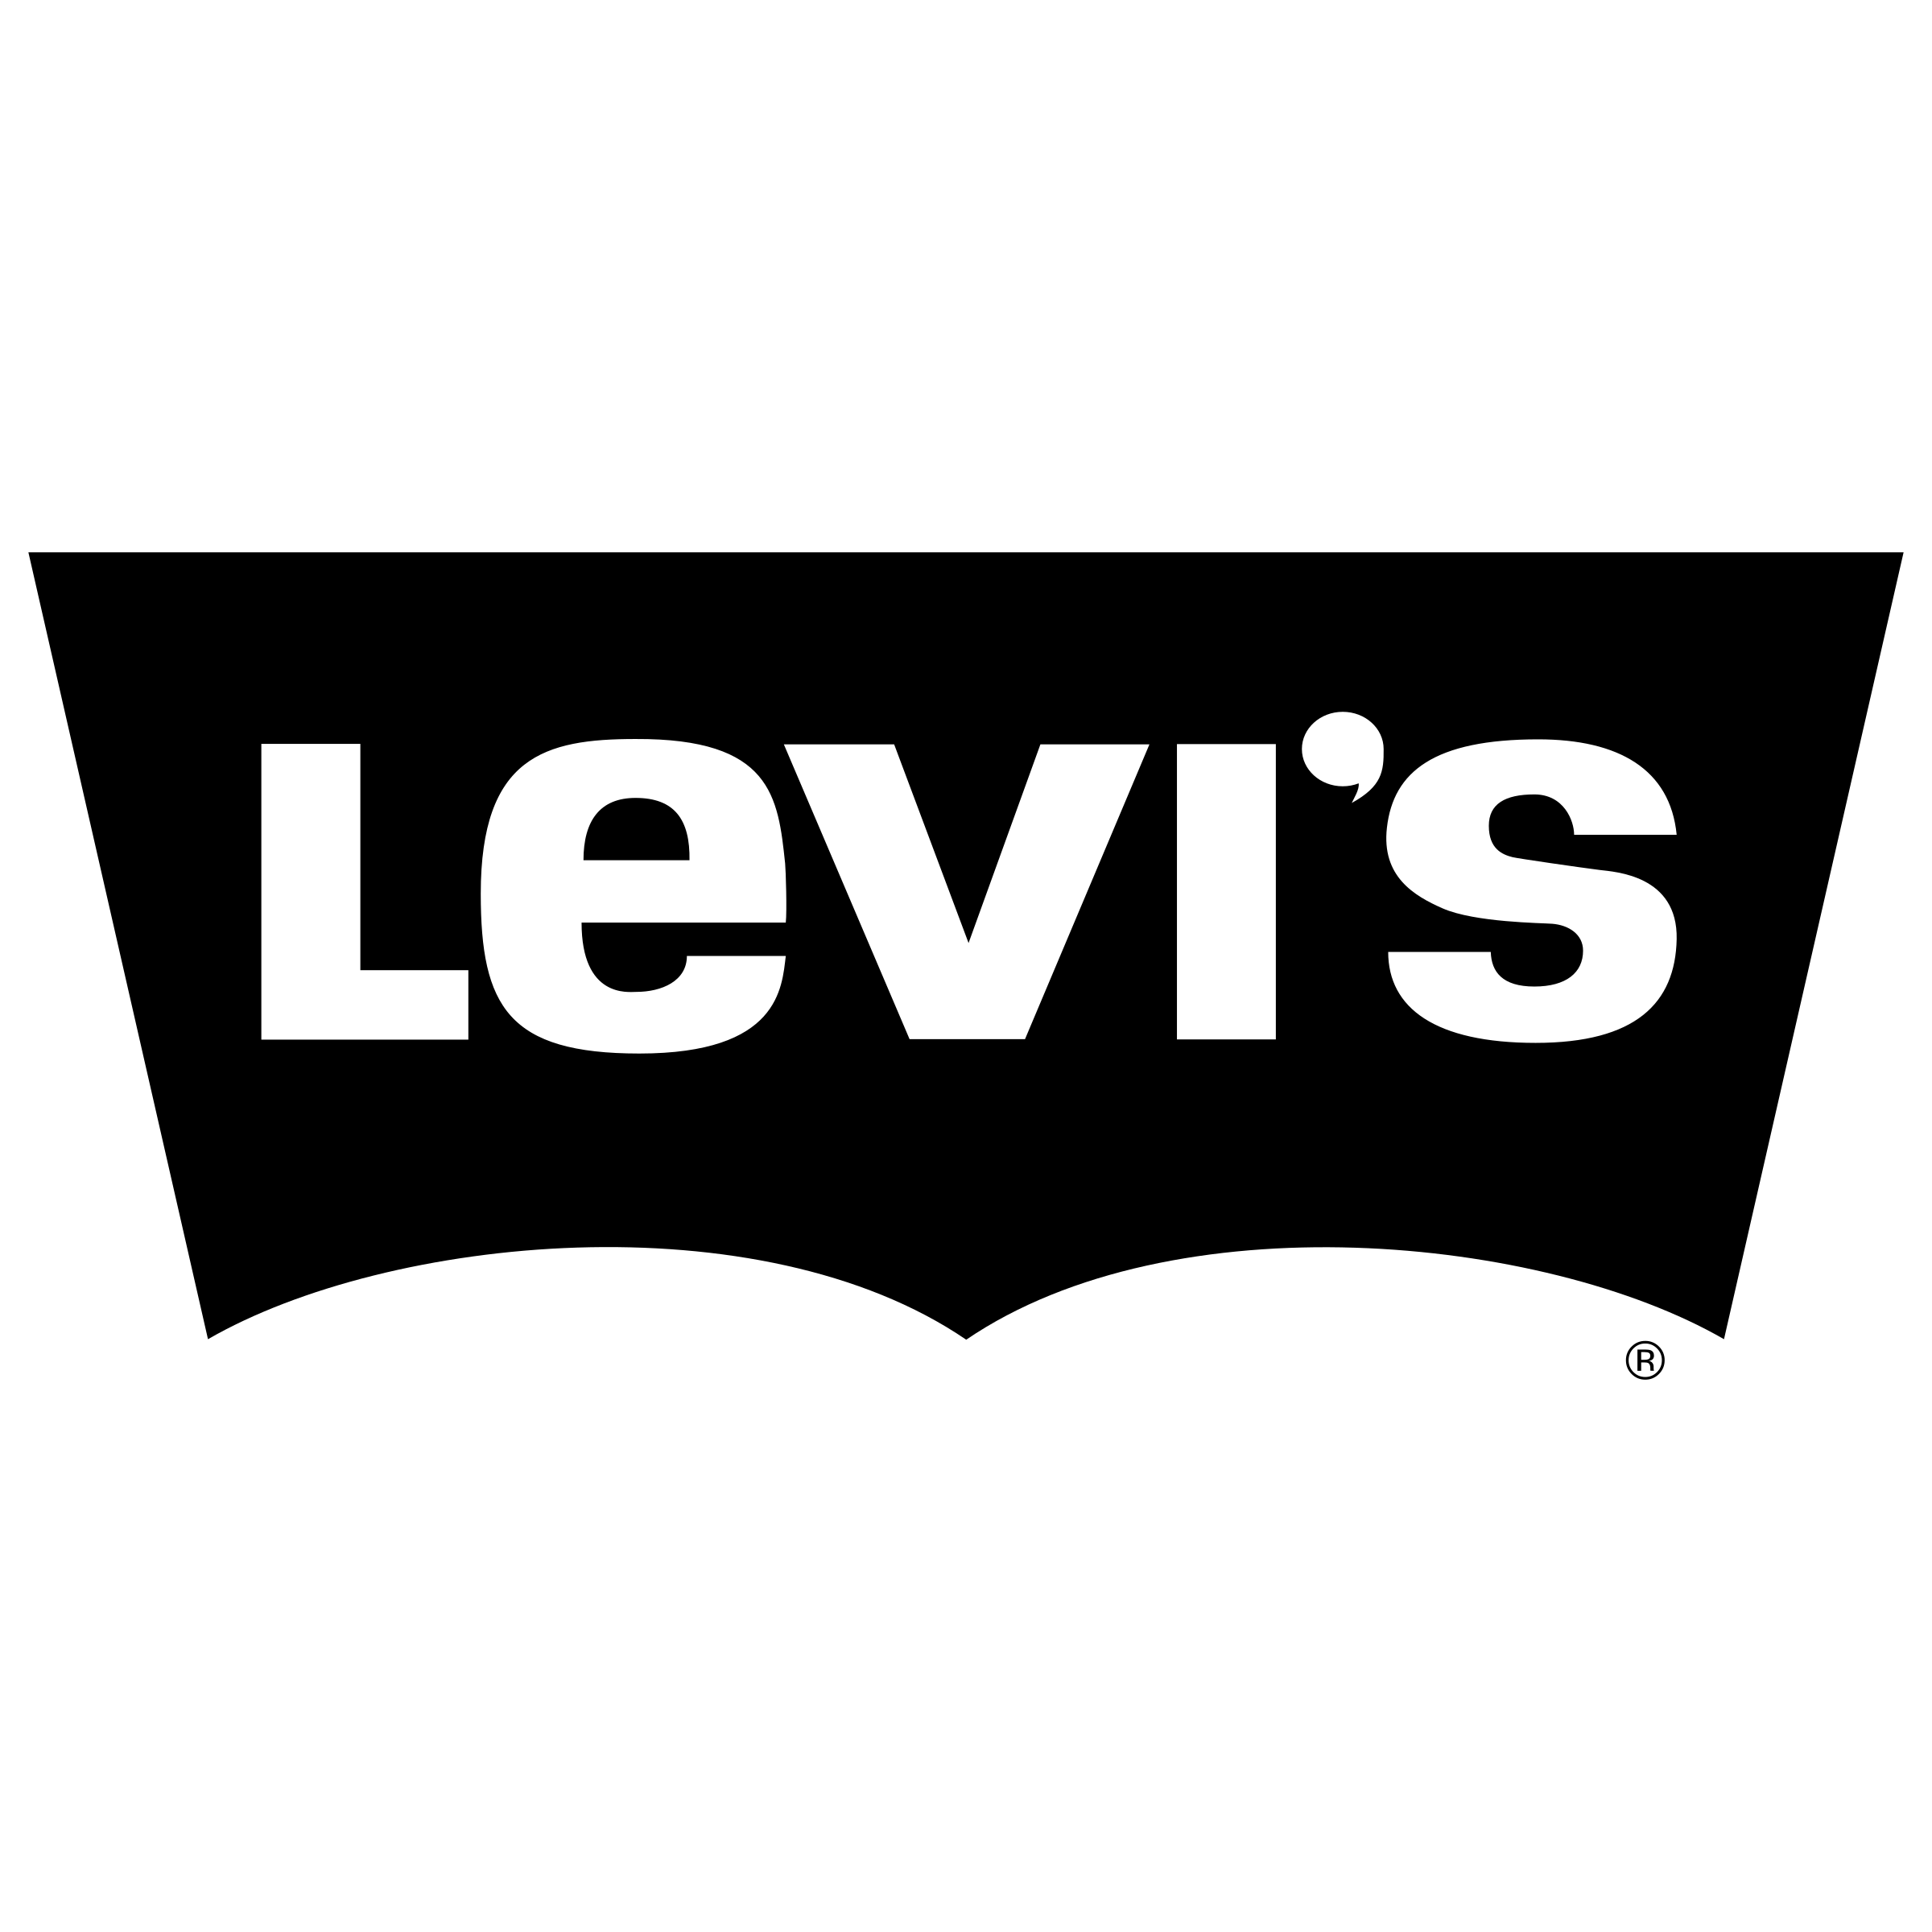 Levis Transparent File